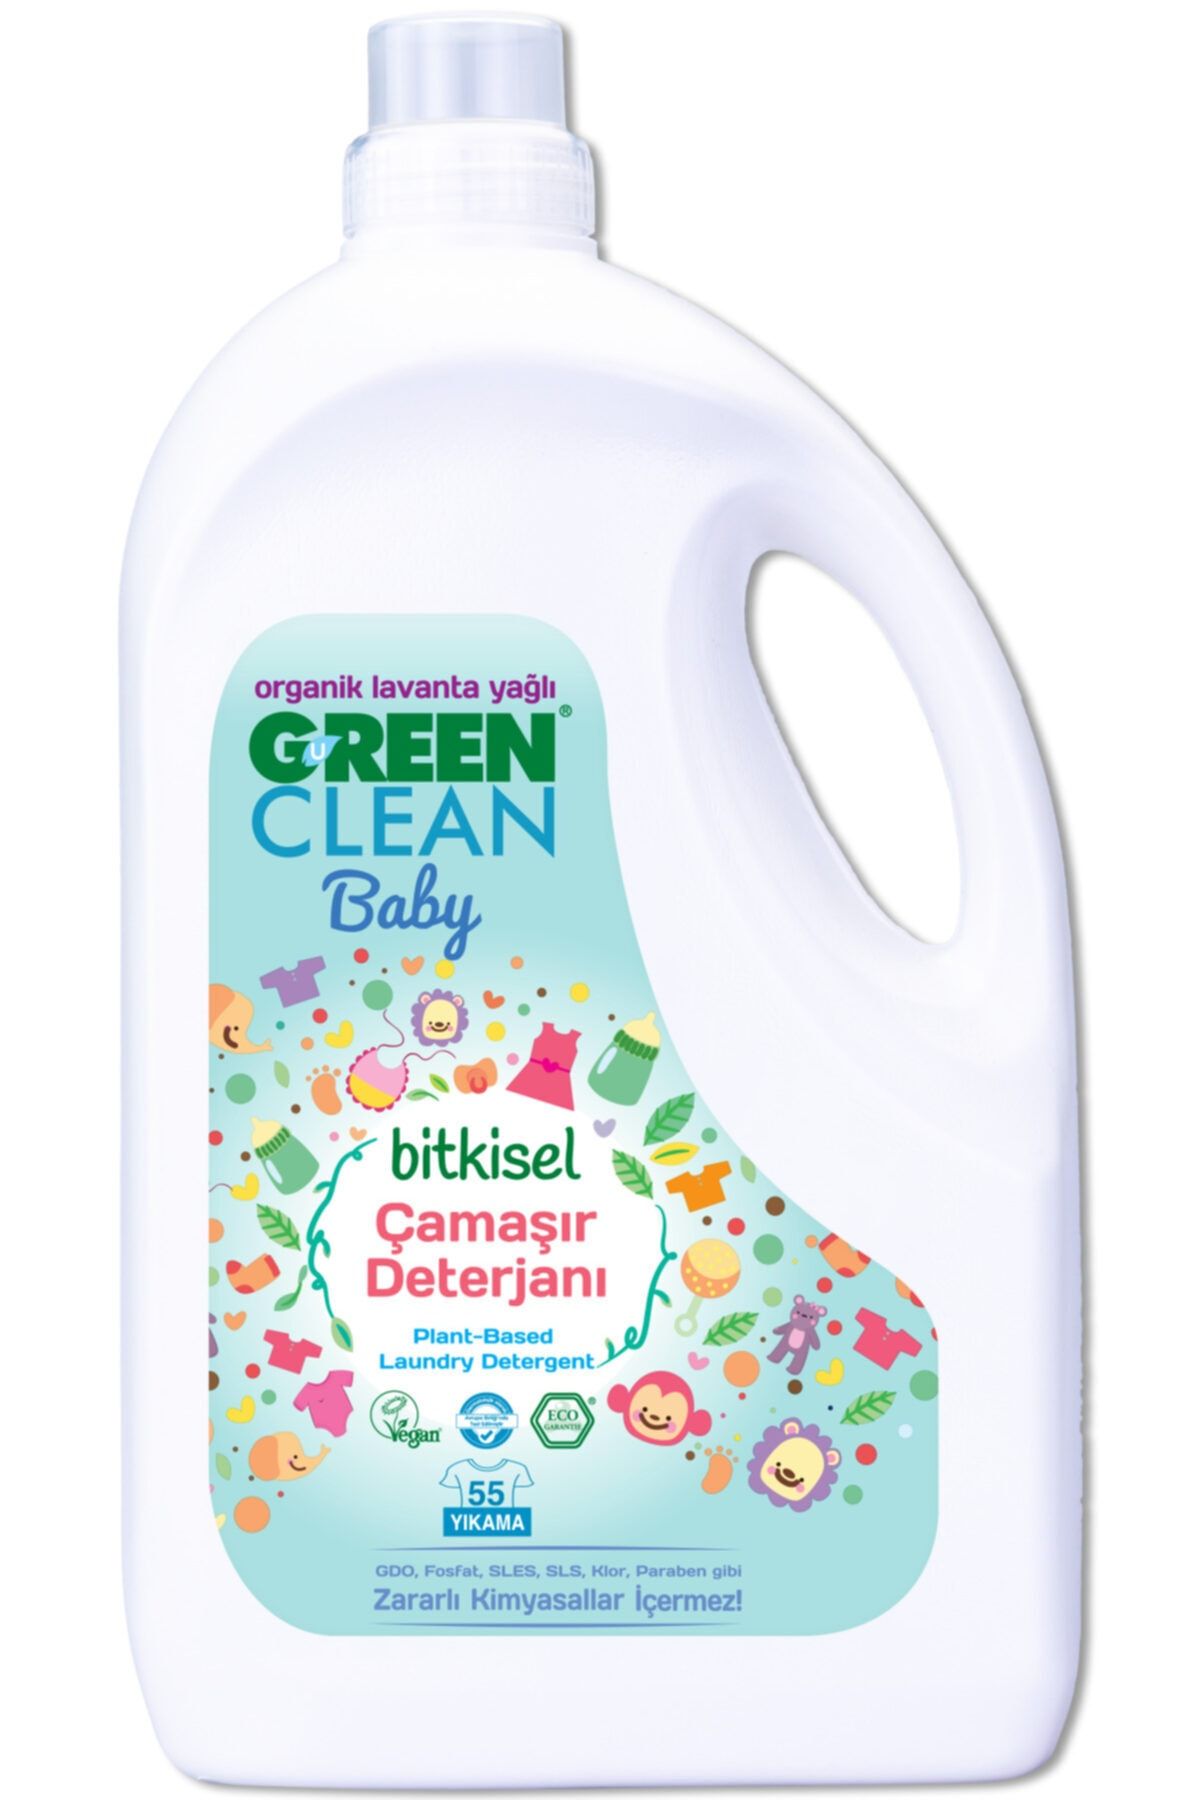 Green Clean Baby Bitkisel Çamaşır Deterjanı Organik Lavanta Yağlı 2,75 lt